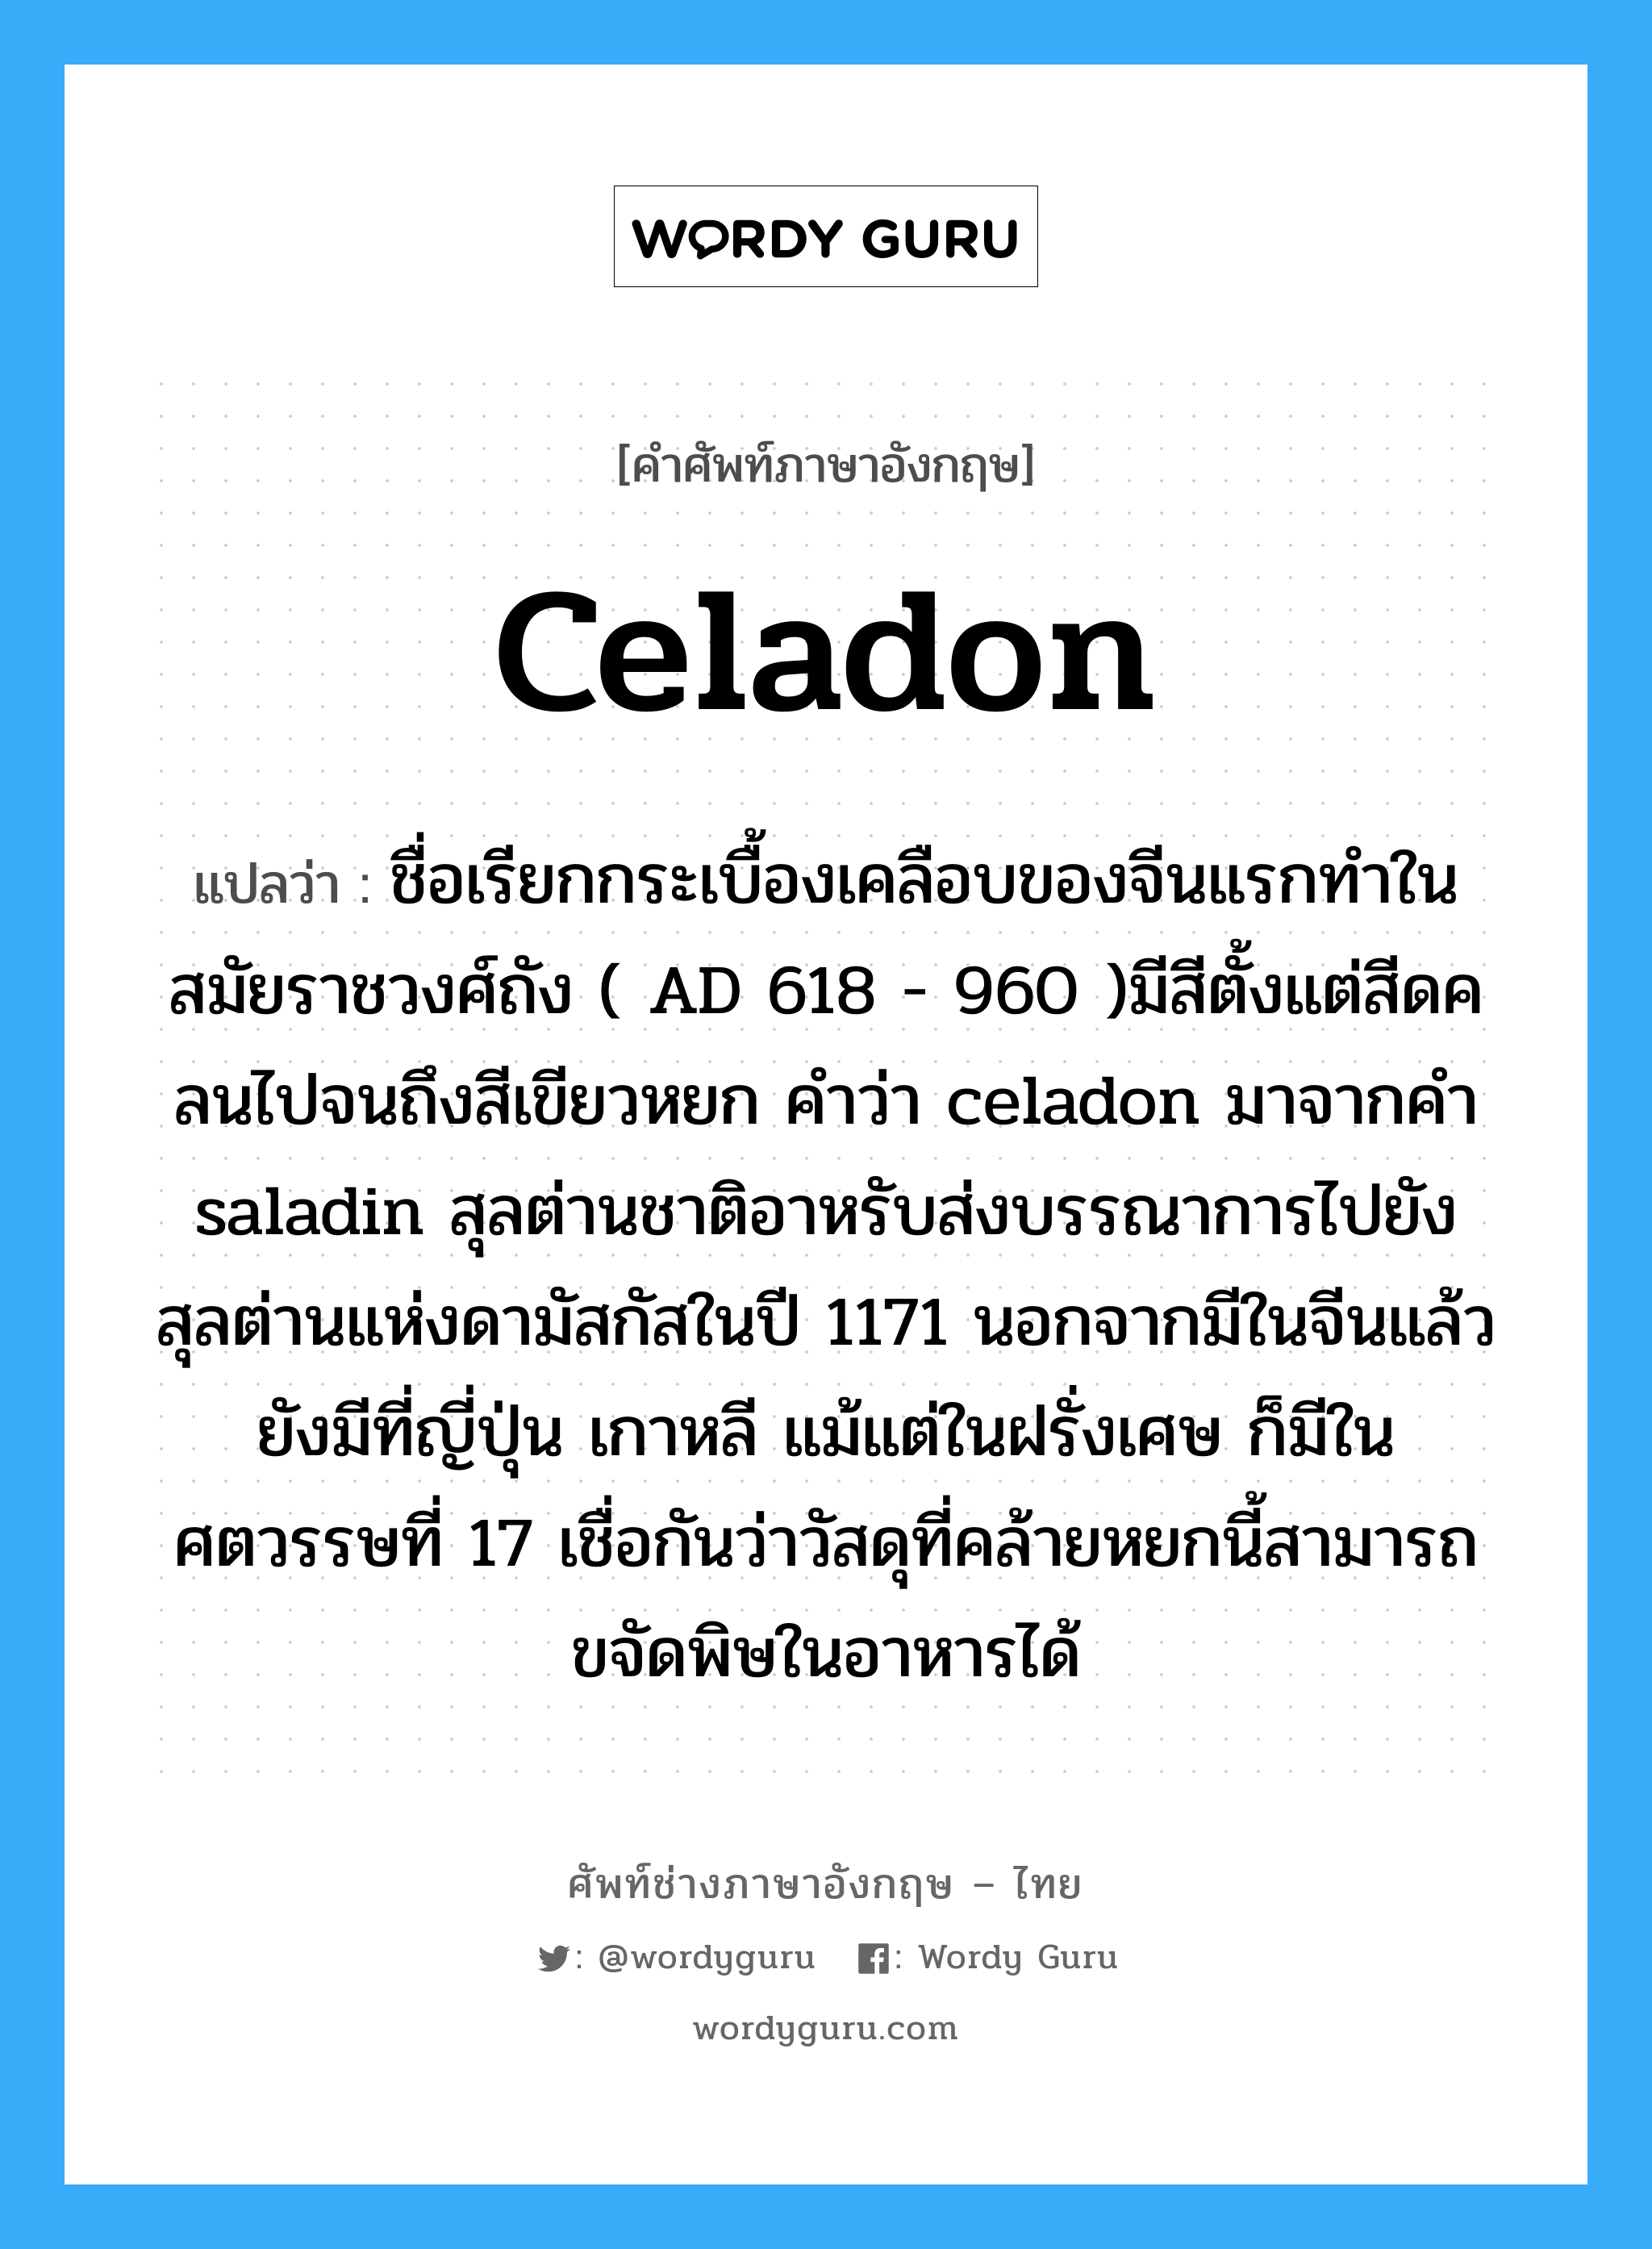 celadon แปลว่า?, คำศัพท์ช่างภาษาอังกฤษ - ไทย celadon คำศัพท์ภาษาอังกฤษ celadon แปลว่า ชื่อเรียกกระเบื้องเคลือบของจีนแรกทำในสมัยราชวงศ์ถัง ( AD 618 - 960 )มีสีตั้งแต่สีดคลนไปจนถึงสีเขียวหยก คำว่า celadon มาจากคำ saladin สุลต่านชาติอาหรับส่งบรรณาการไปยังสุลต่านแห่งดามัสกัสในปี 1171 นอกจากมีในจีนแล้วยังมีที่ญี่ปุ่น เกาหลี แม้แต่ในฝรั่งเศษ ก็มีในศตวรรษที่ 17 เชื่อกันว่าวัสดุที่คล้ายหยกนี้สามารถขจัดพิษในอาหารได้